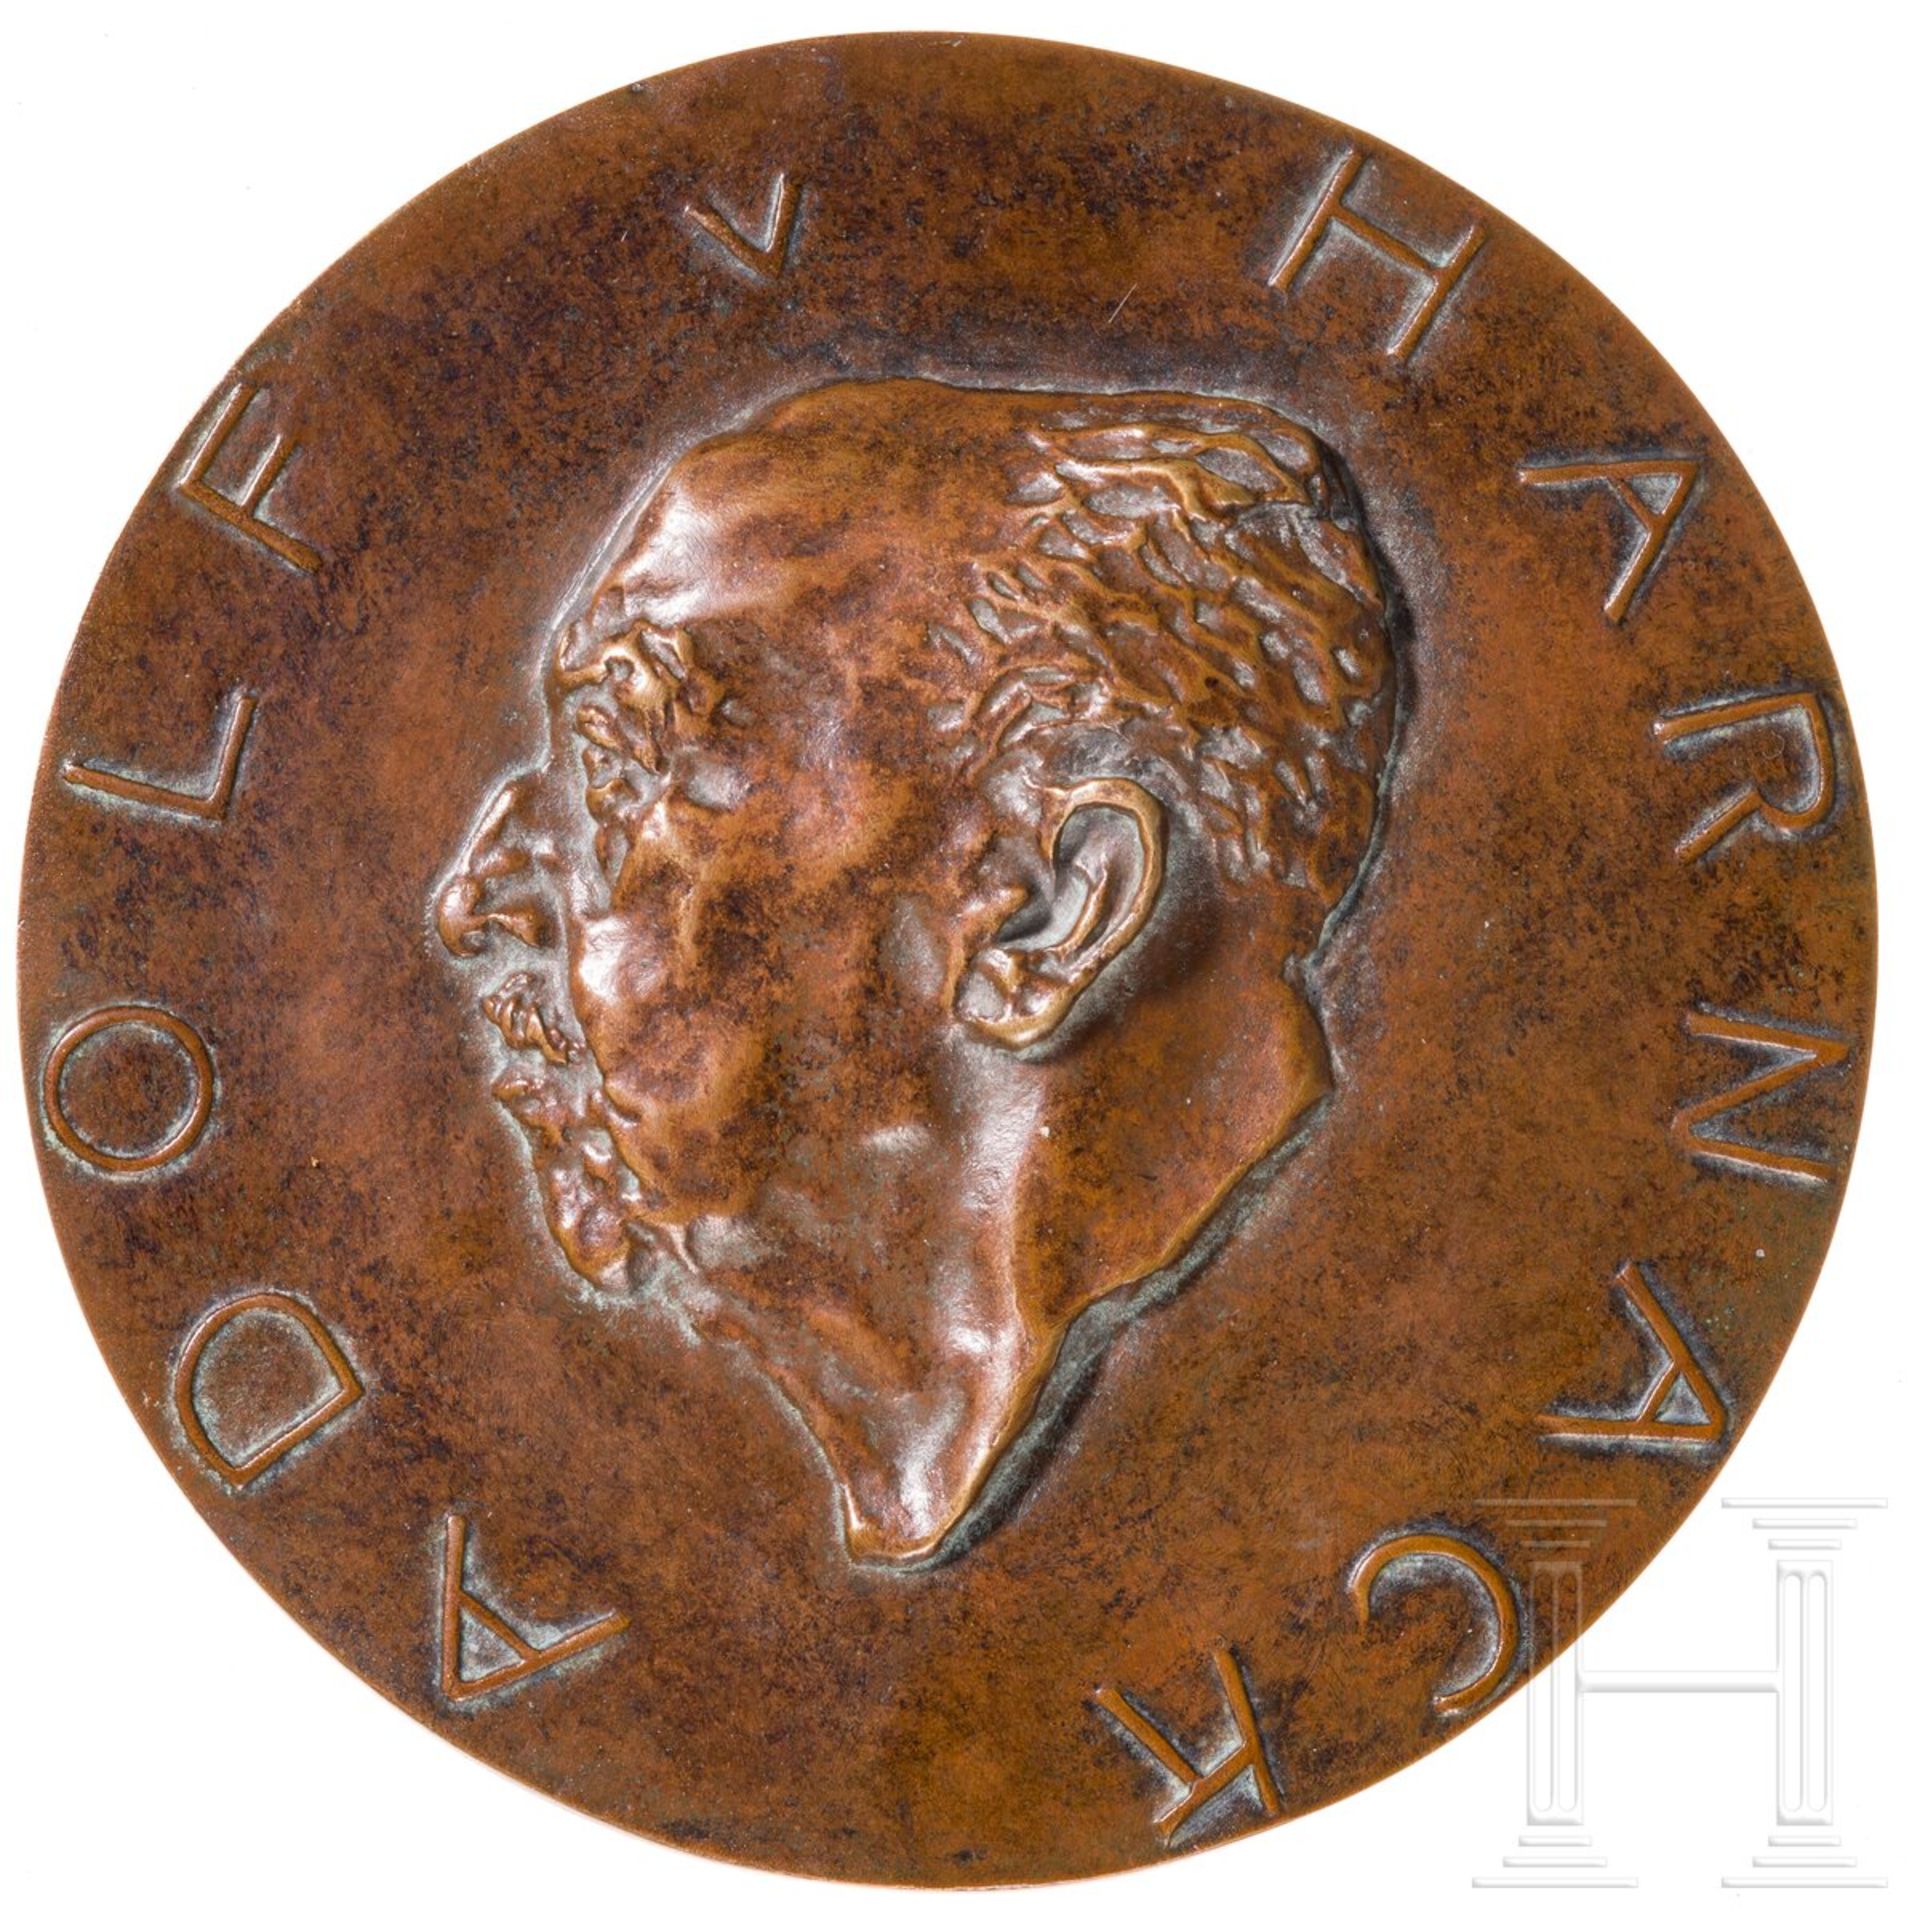 Adolf-Harnack-Medaille der Max-Planck-Gesellschaft - Image 2 of 4